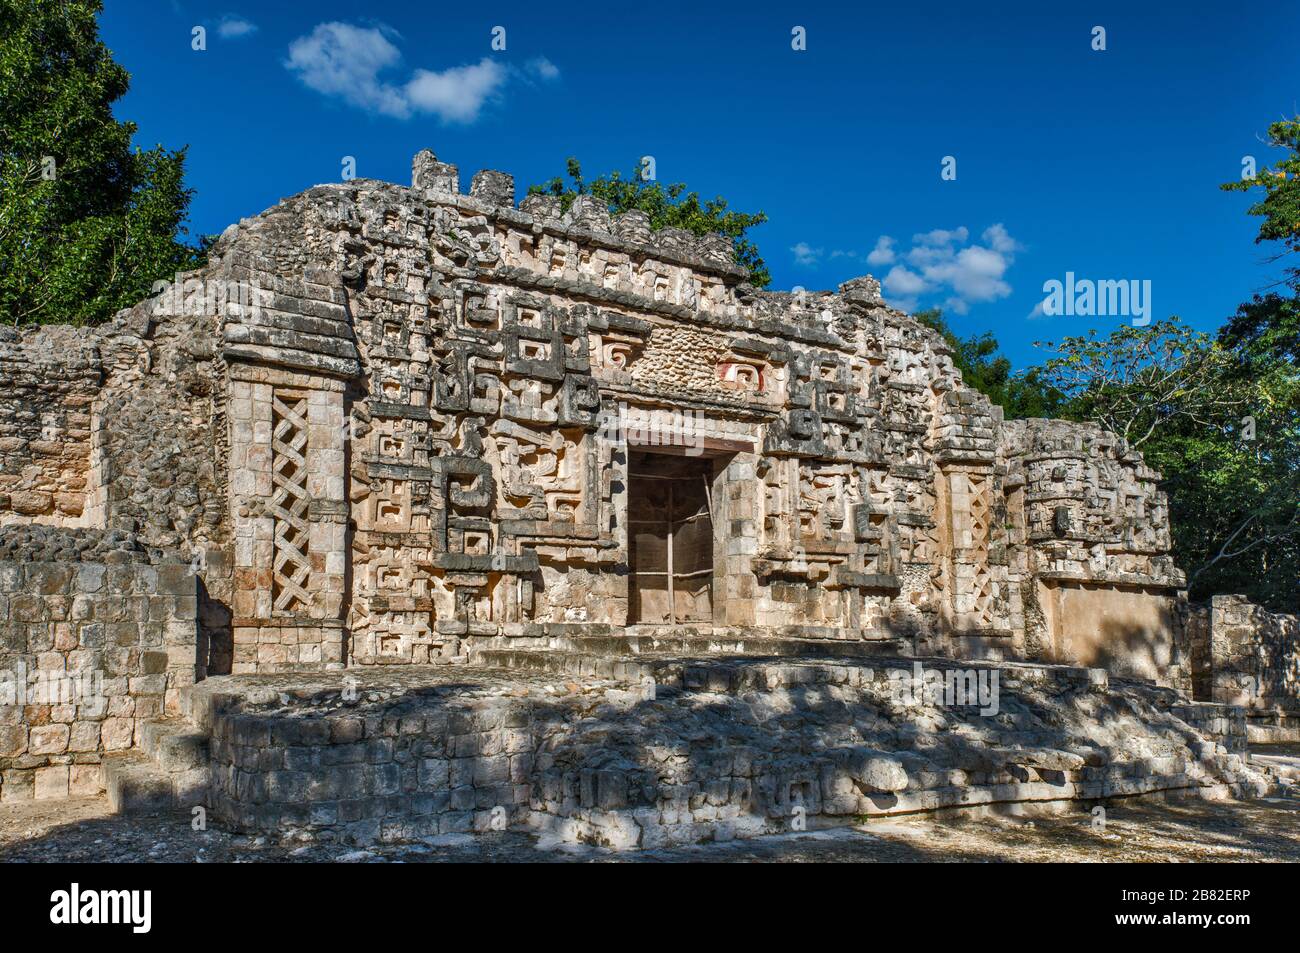 Monster Mouth entrance at Palacio Principal, Maya ruins at Hochob archaeological site, near Chencoh, Yucatan Peninsula, Campeche state, Mexico Stock Photo